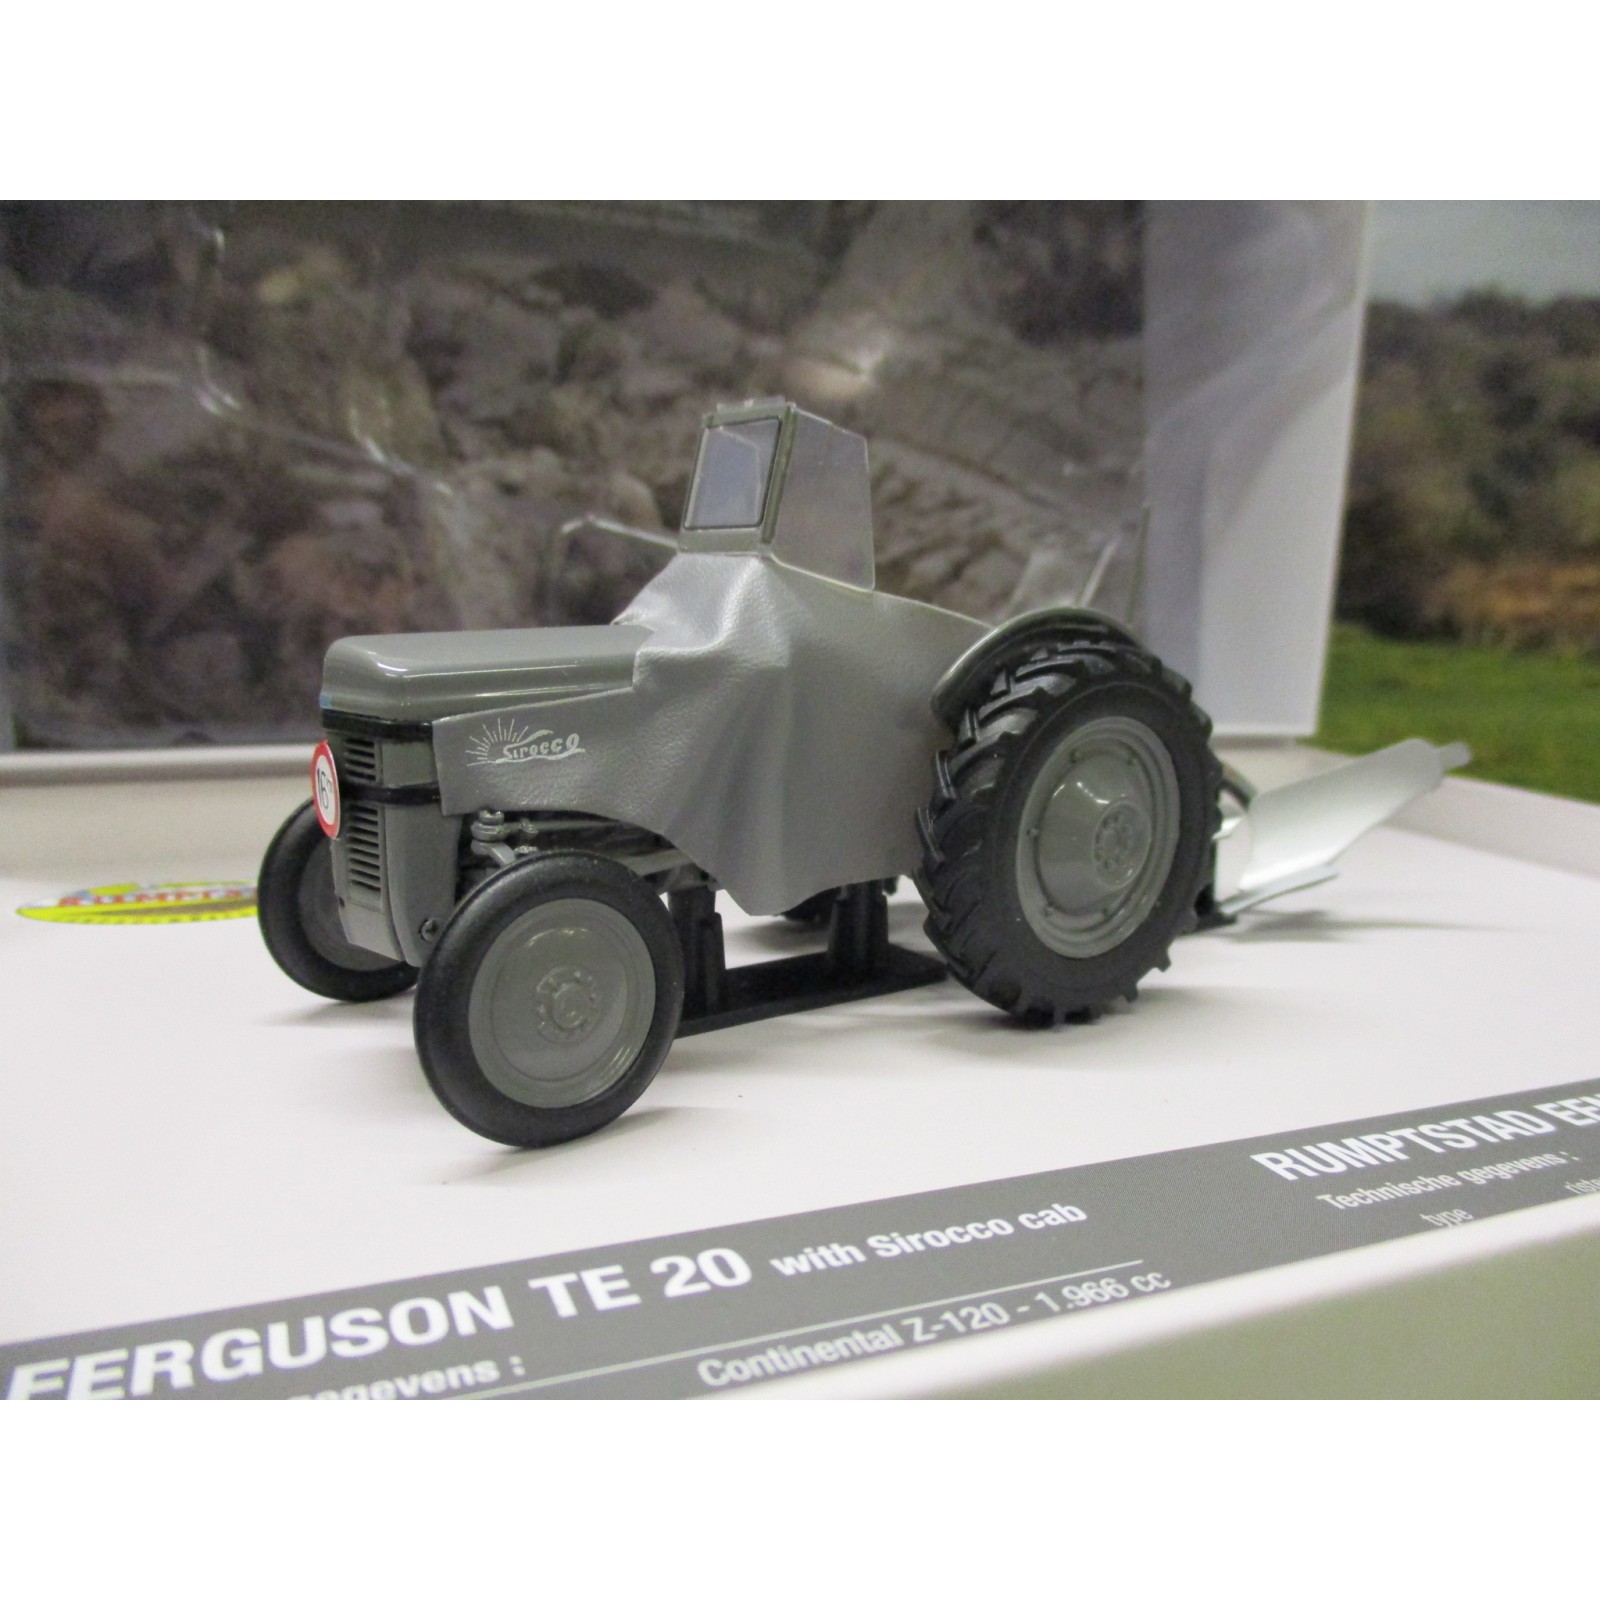 Ferguson Plough & Cultivator Set Universal Hobbies Details about   1/32 Ferguson TE-20 